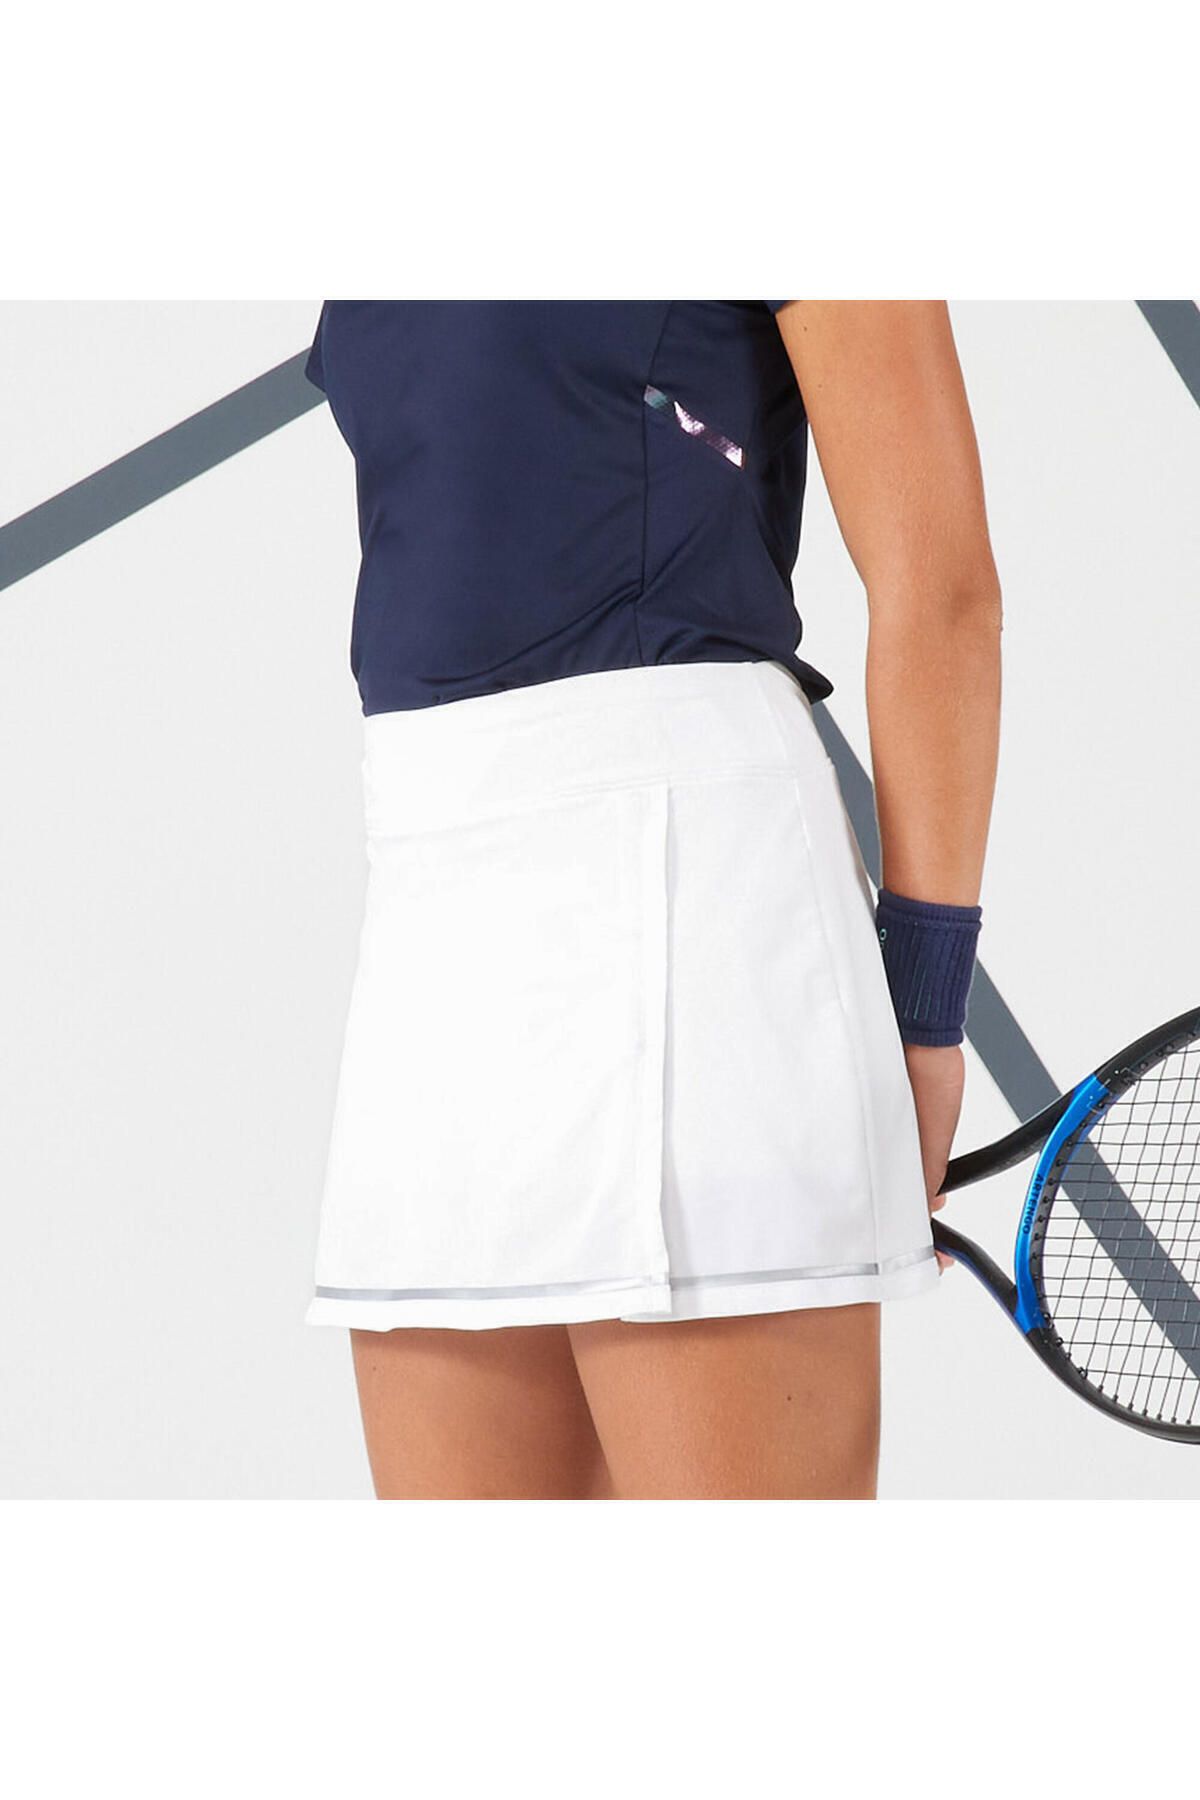 Decathlon Artengo Kadın Tenis Eteği - Beyaz - Dry 500